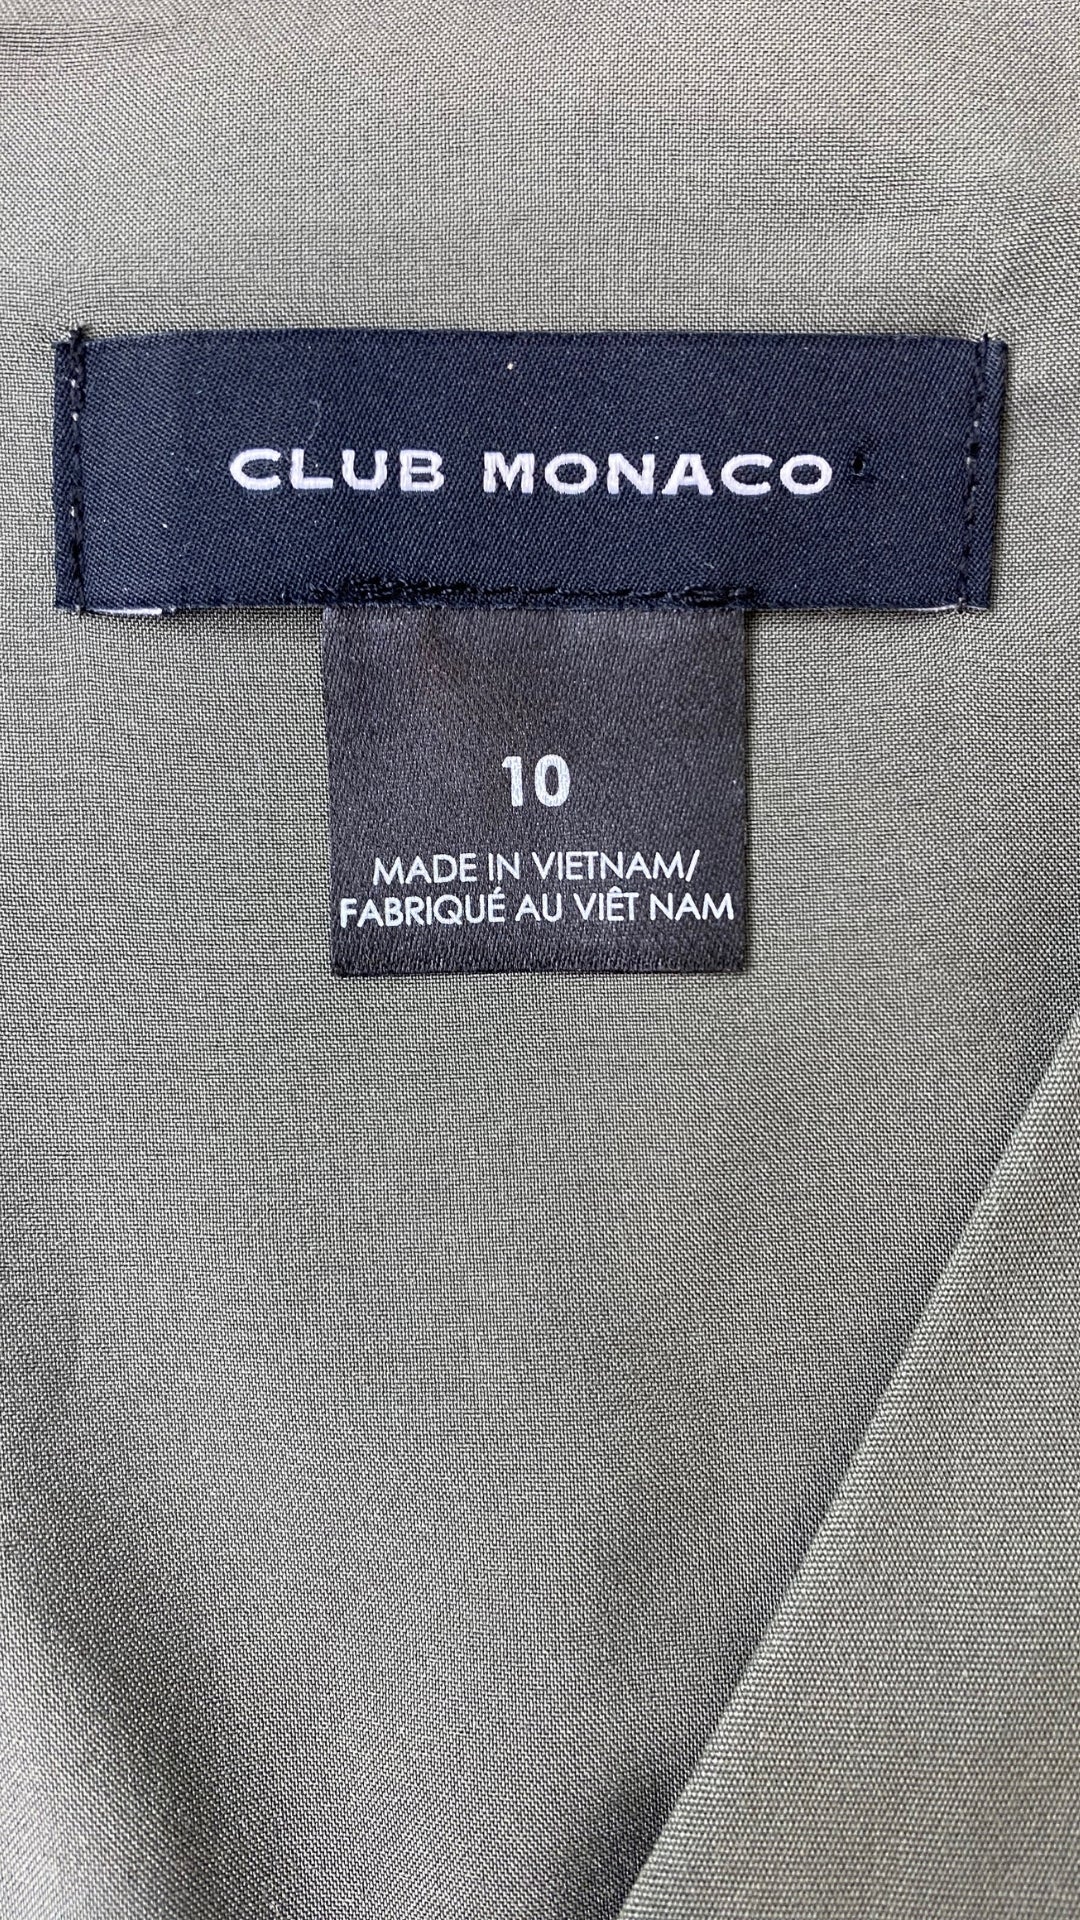 Haut peplum kaki doux Club Monaco, taille 10. Vue de l'étiquette de marque et taille.